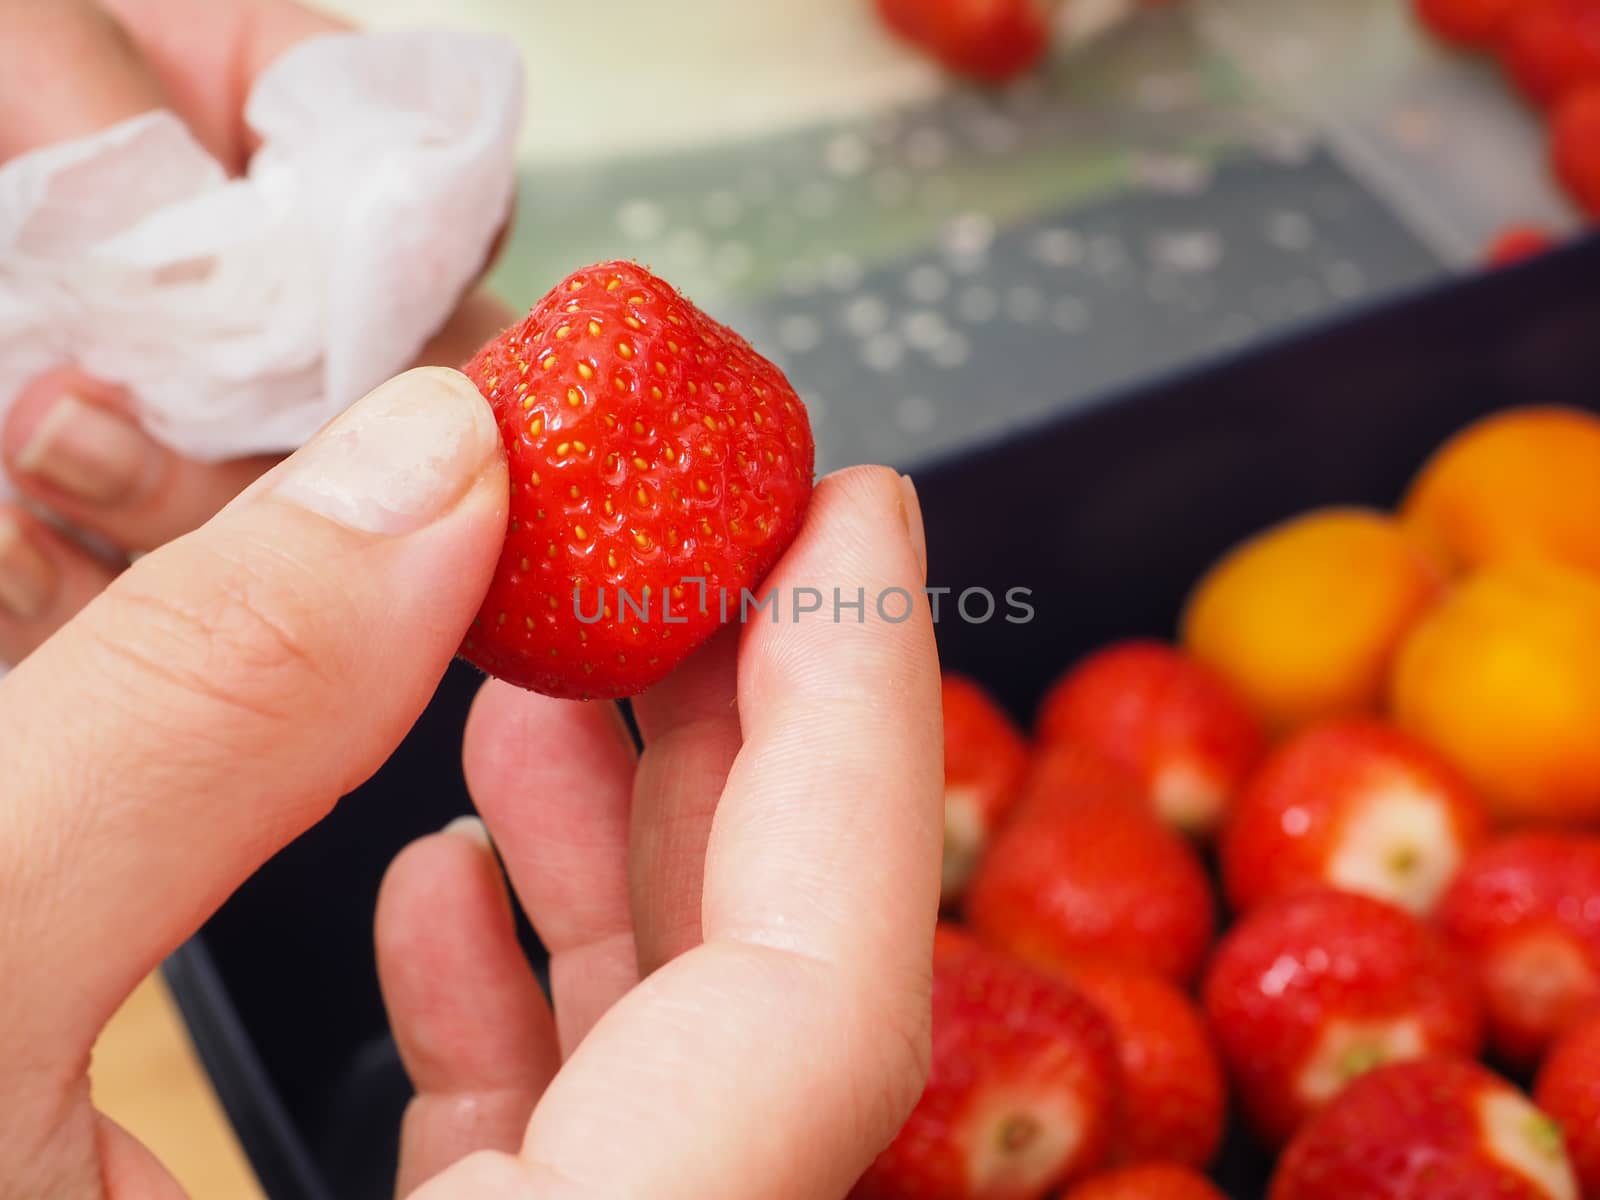 Strawberry by Arvebettum